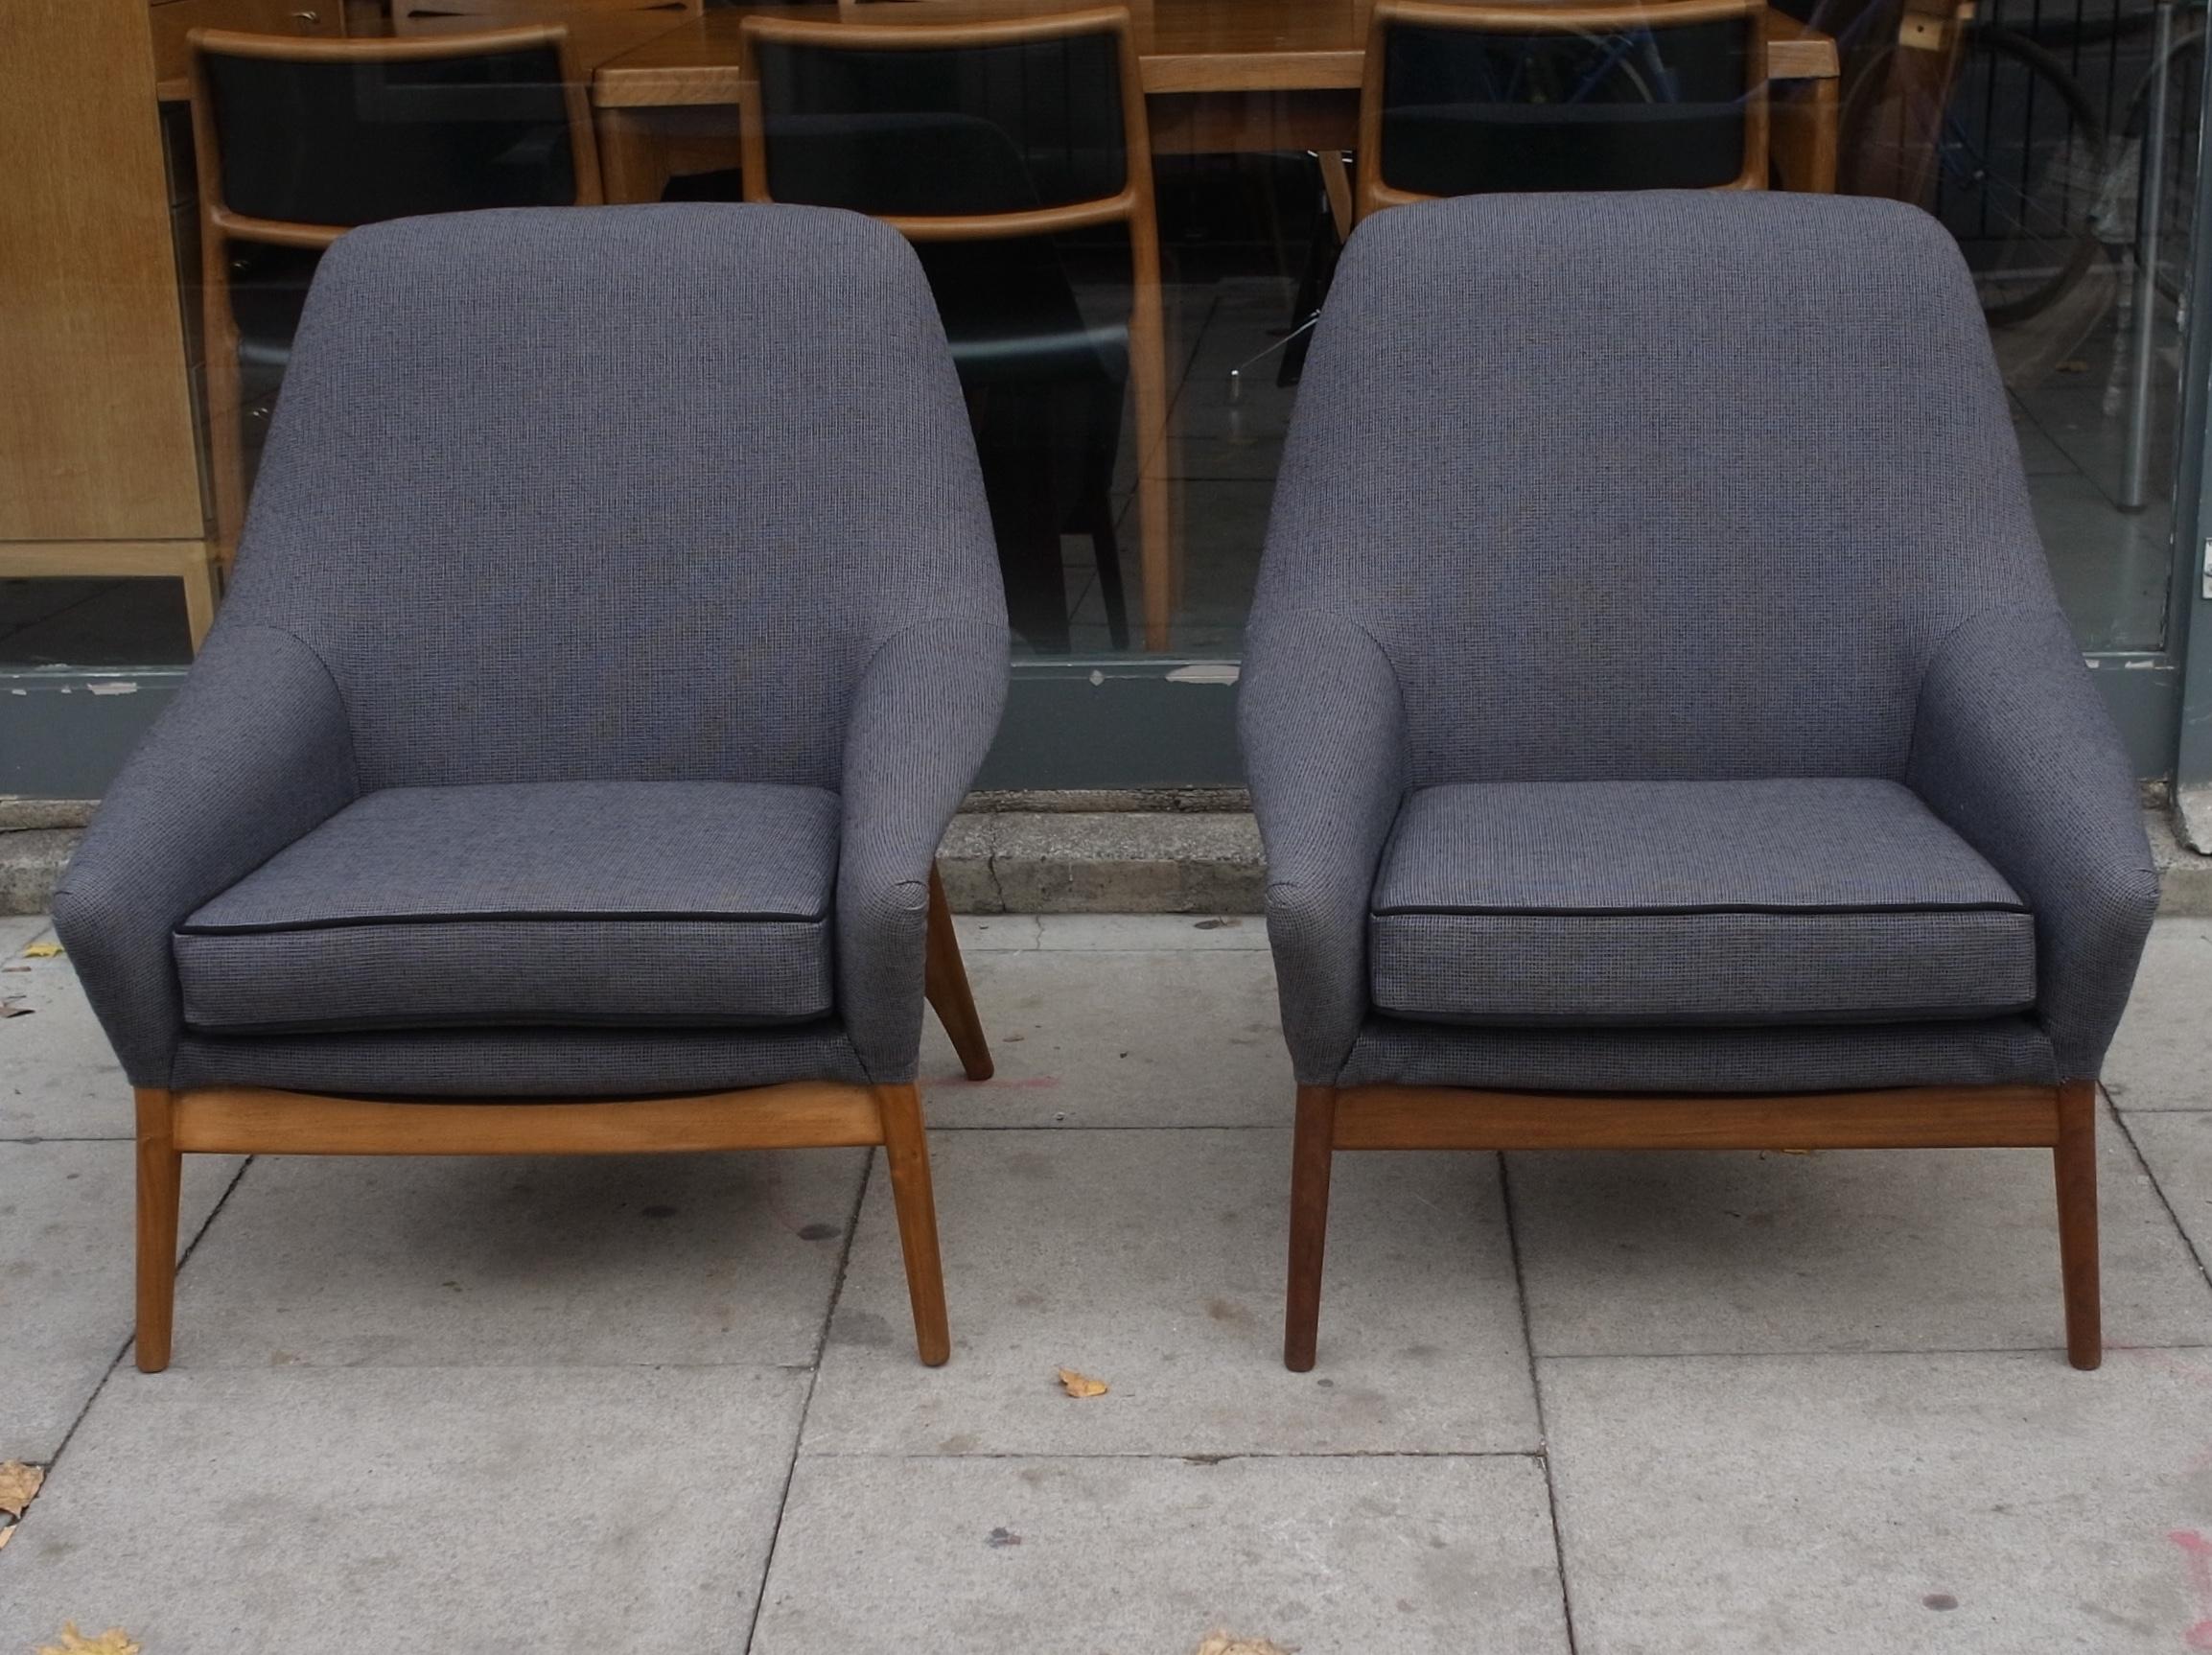 Très rare, confortable et élégante paire de fauteuils Park Knoll 'Maldon' des années 1950, récemment retapissés dans un textile 100% laine gris et noir avec un passepoil noir sur le coussin d'assise, sur une base externe en noyer. Ces fauteuils sont